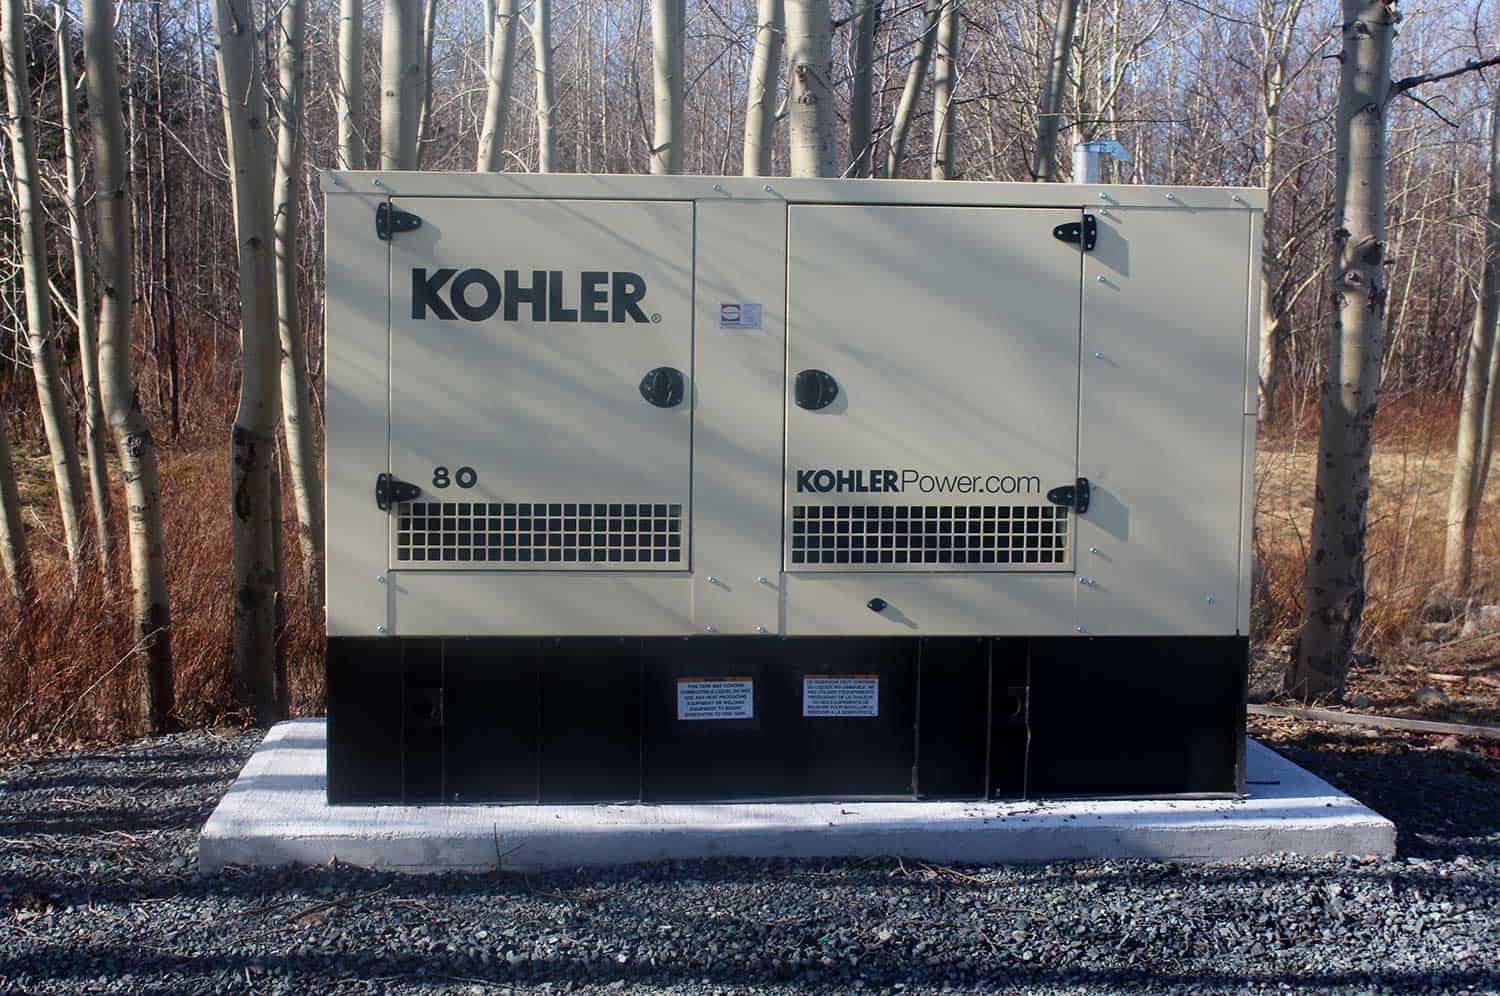 Kohler 80 diesel generator